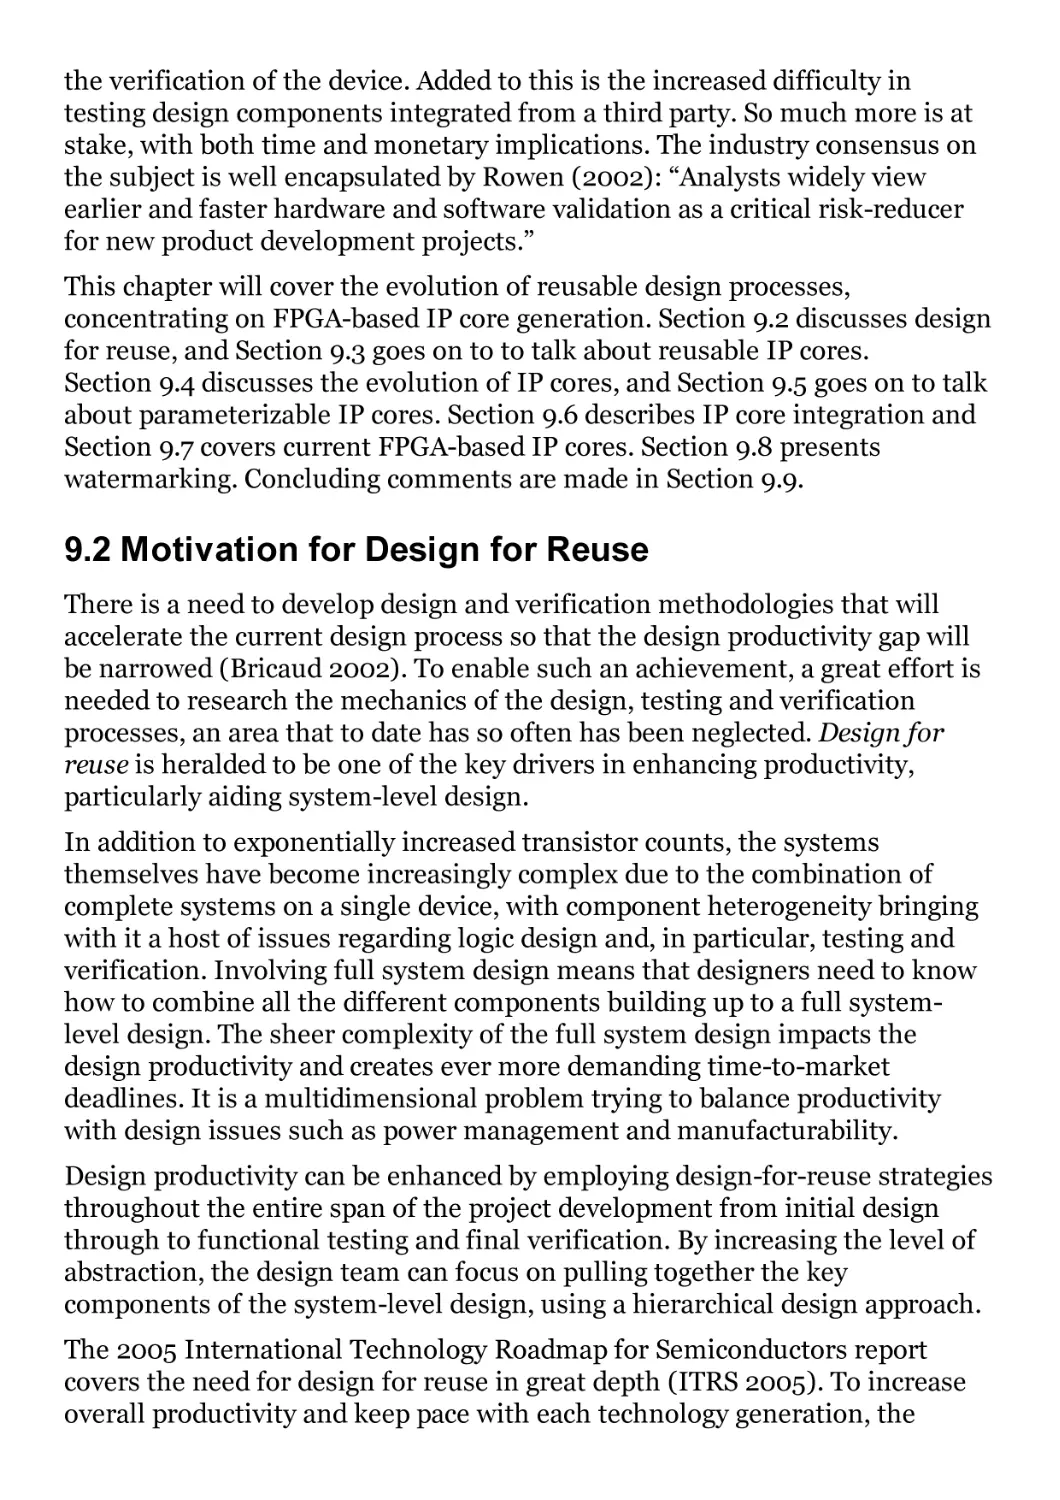 9.2 Motivation for Design for Reuse